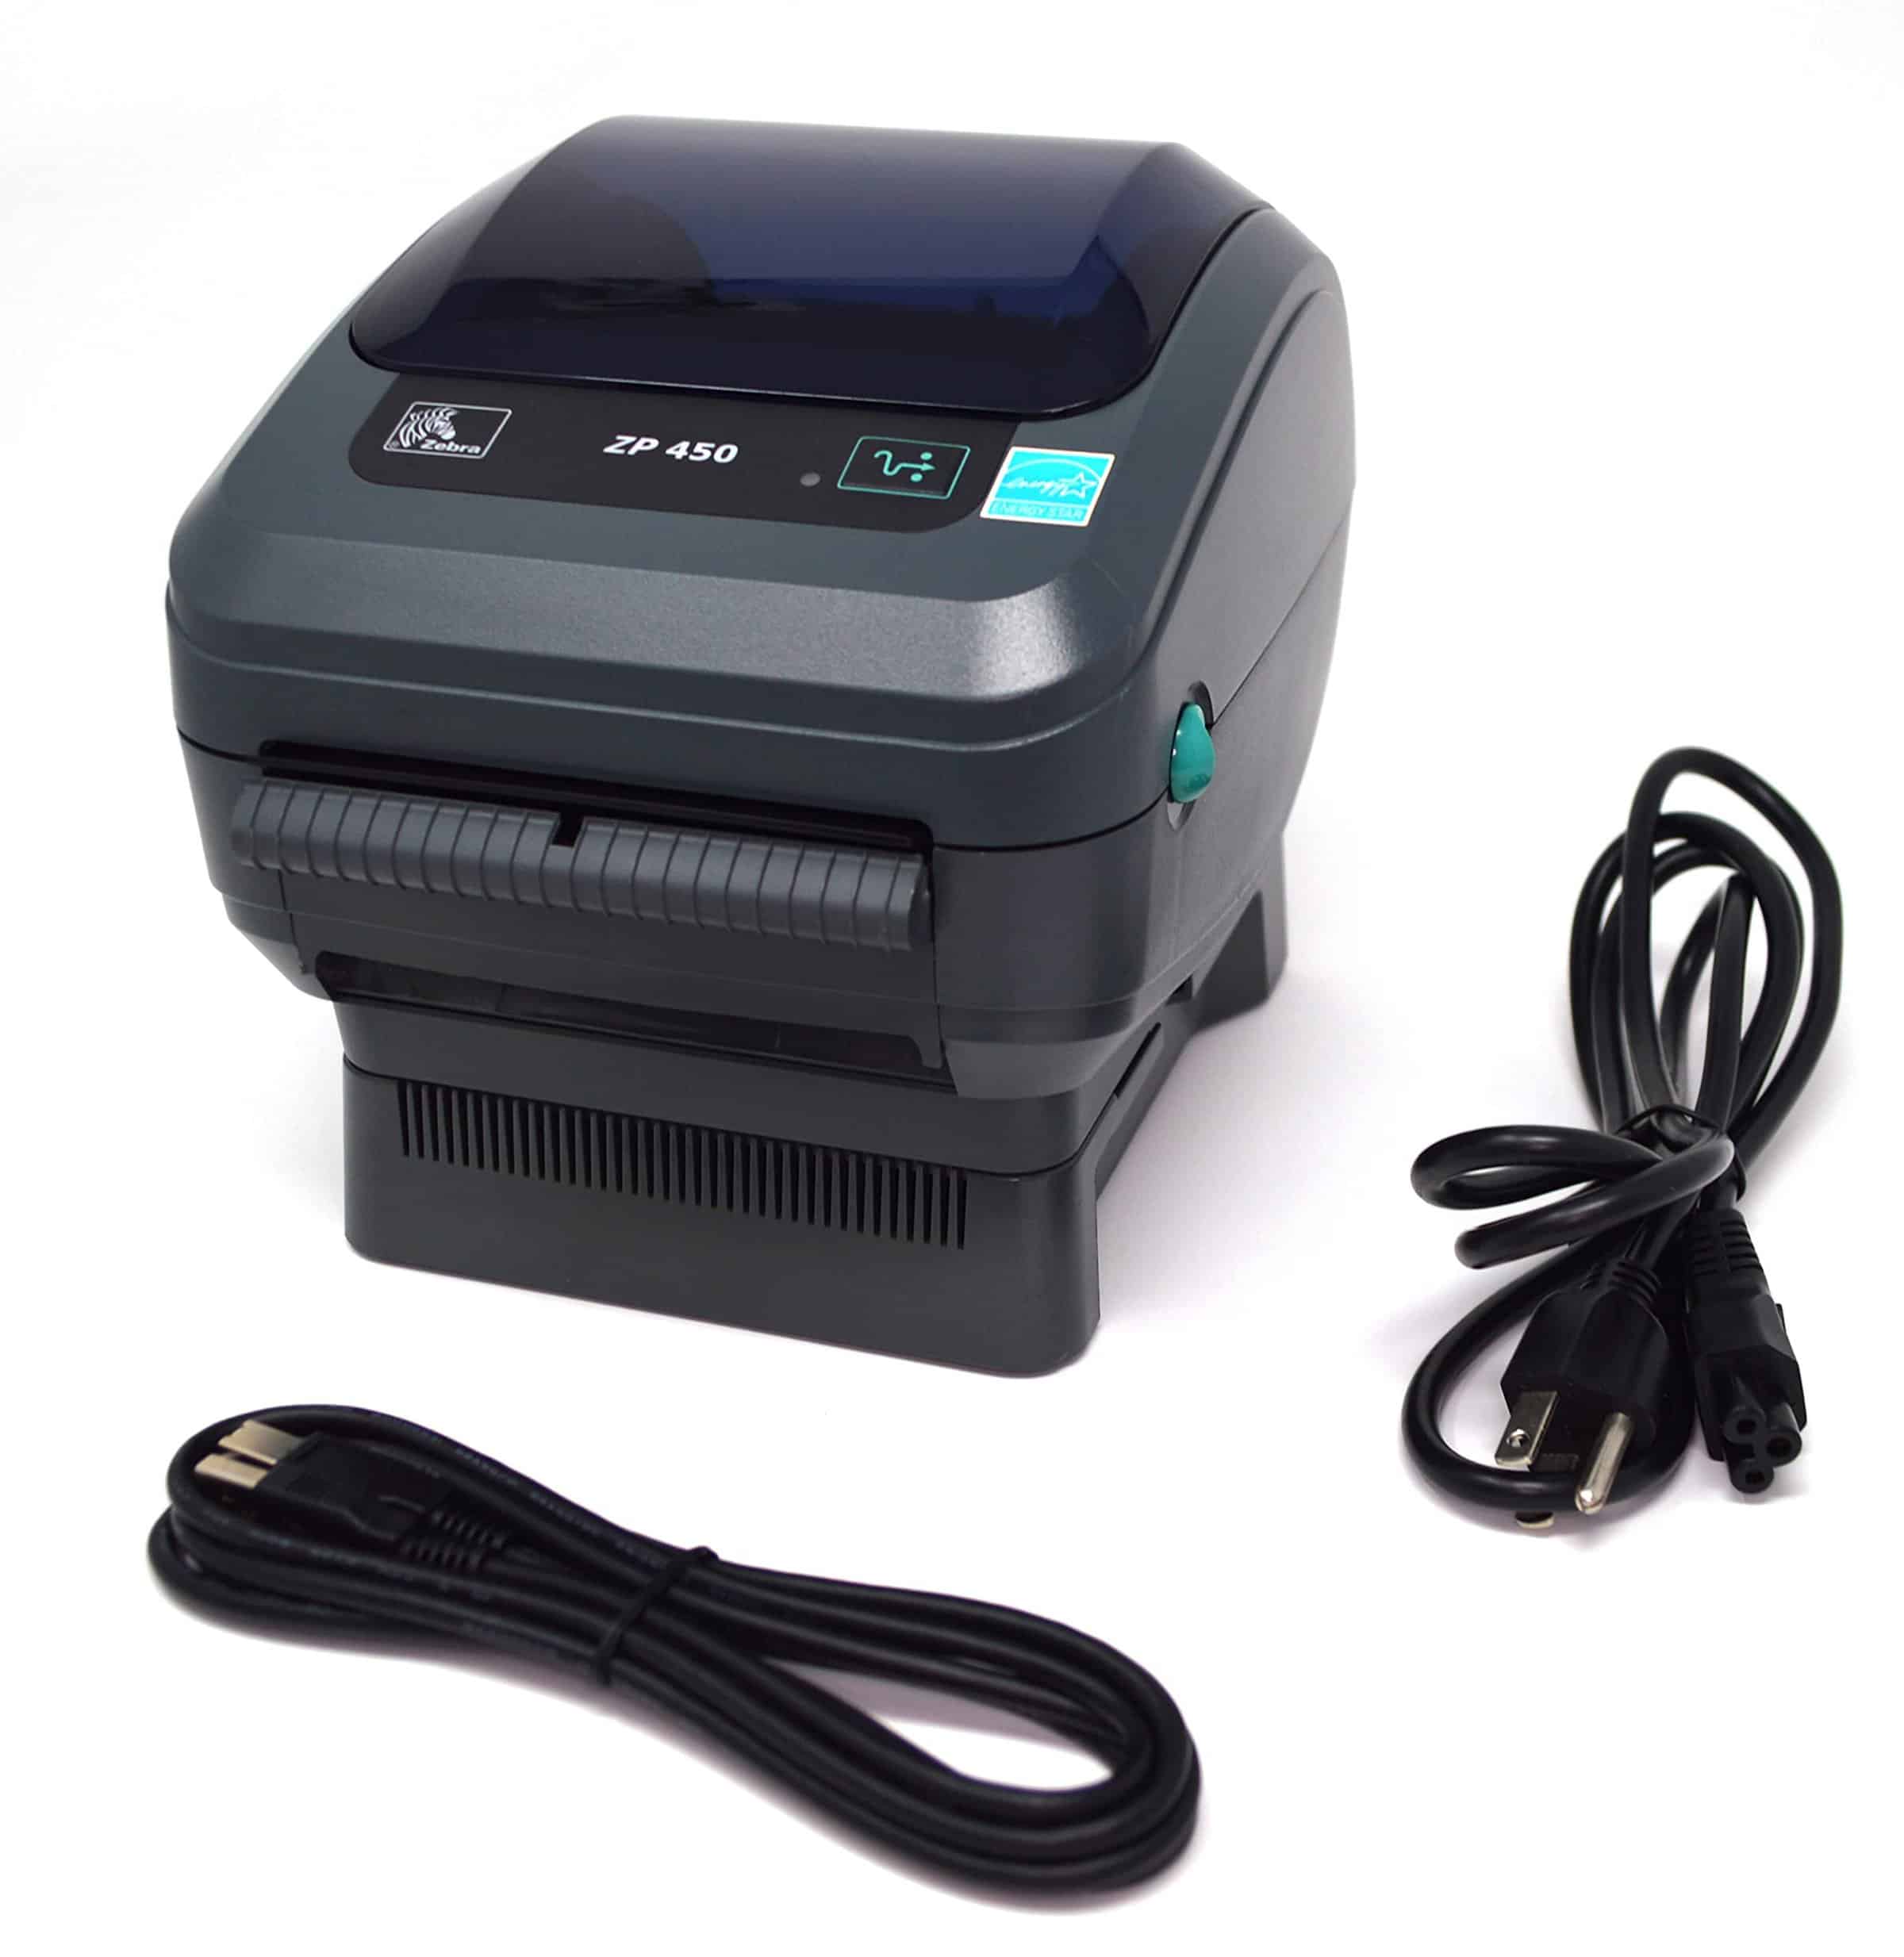 Zebra ZP 450 Thermal Printer